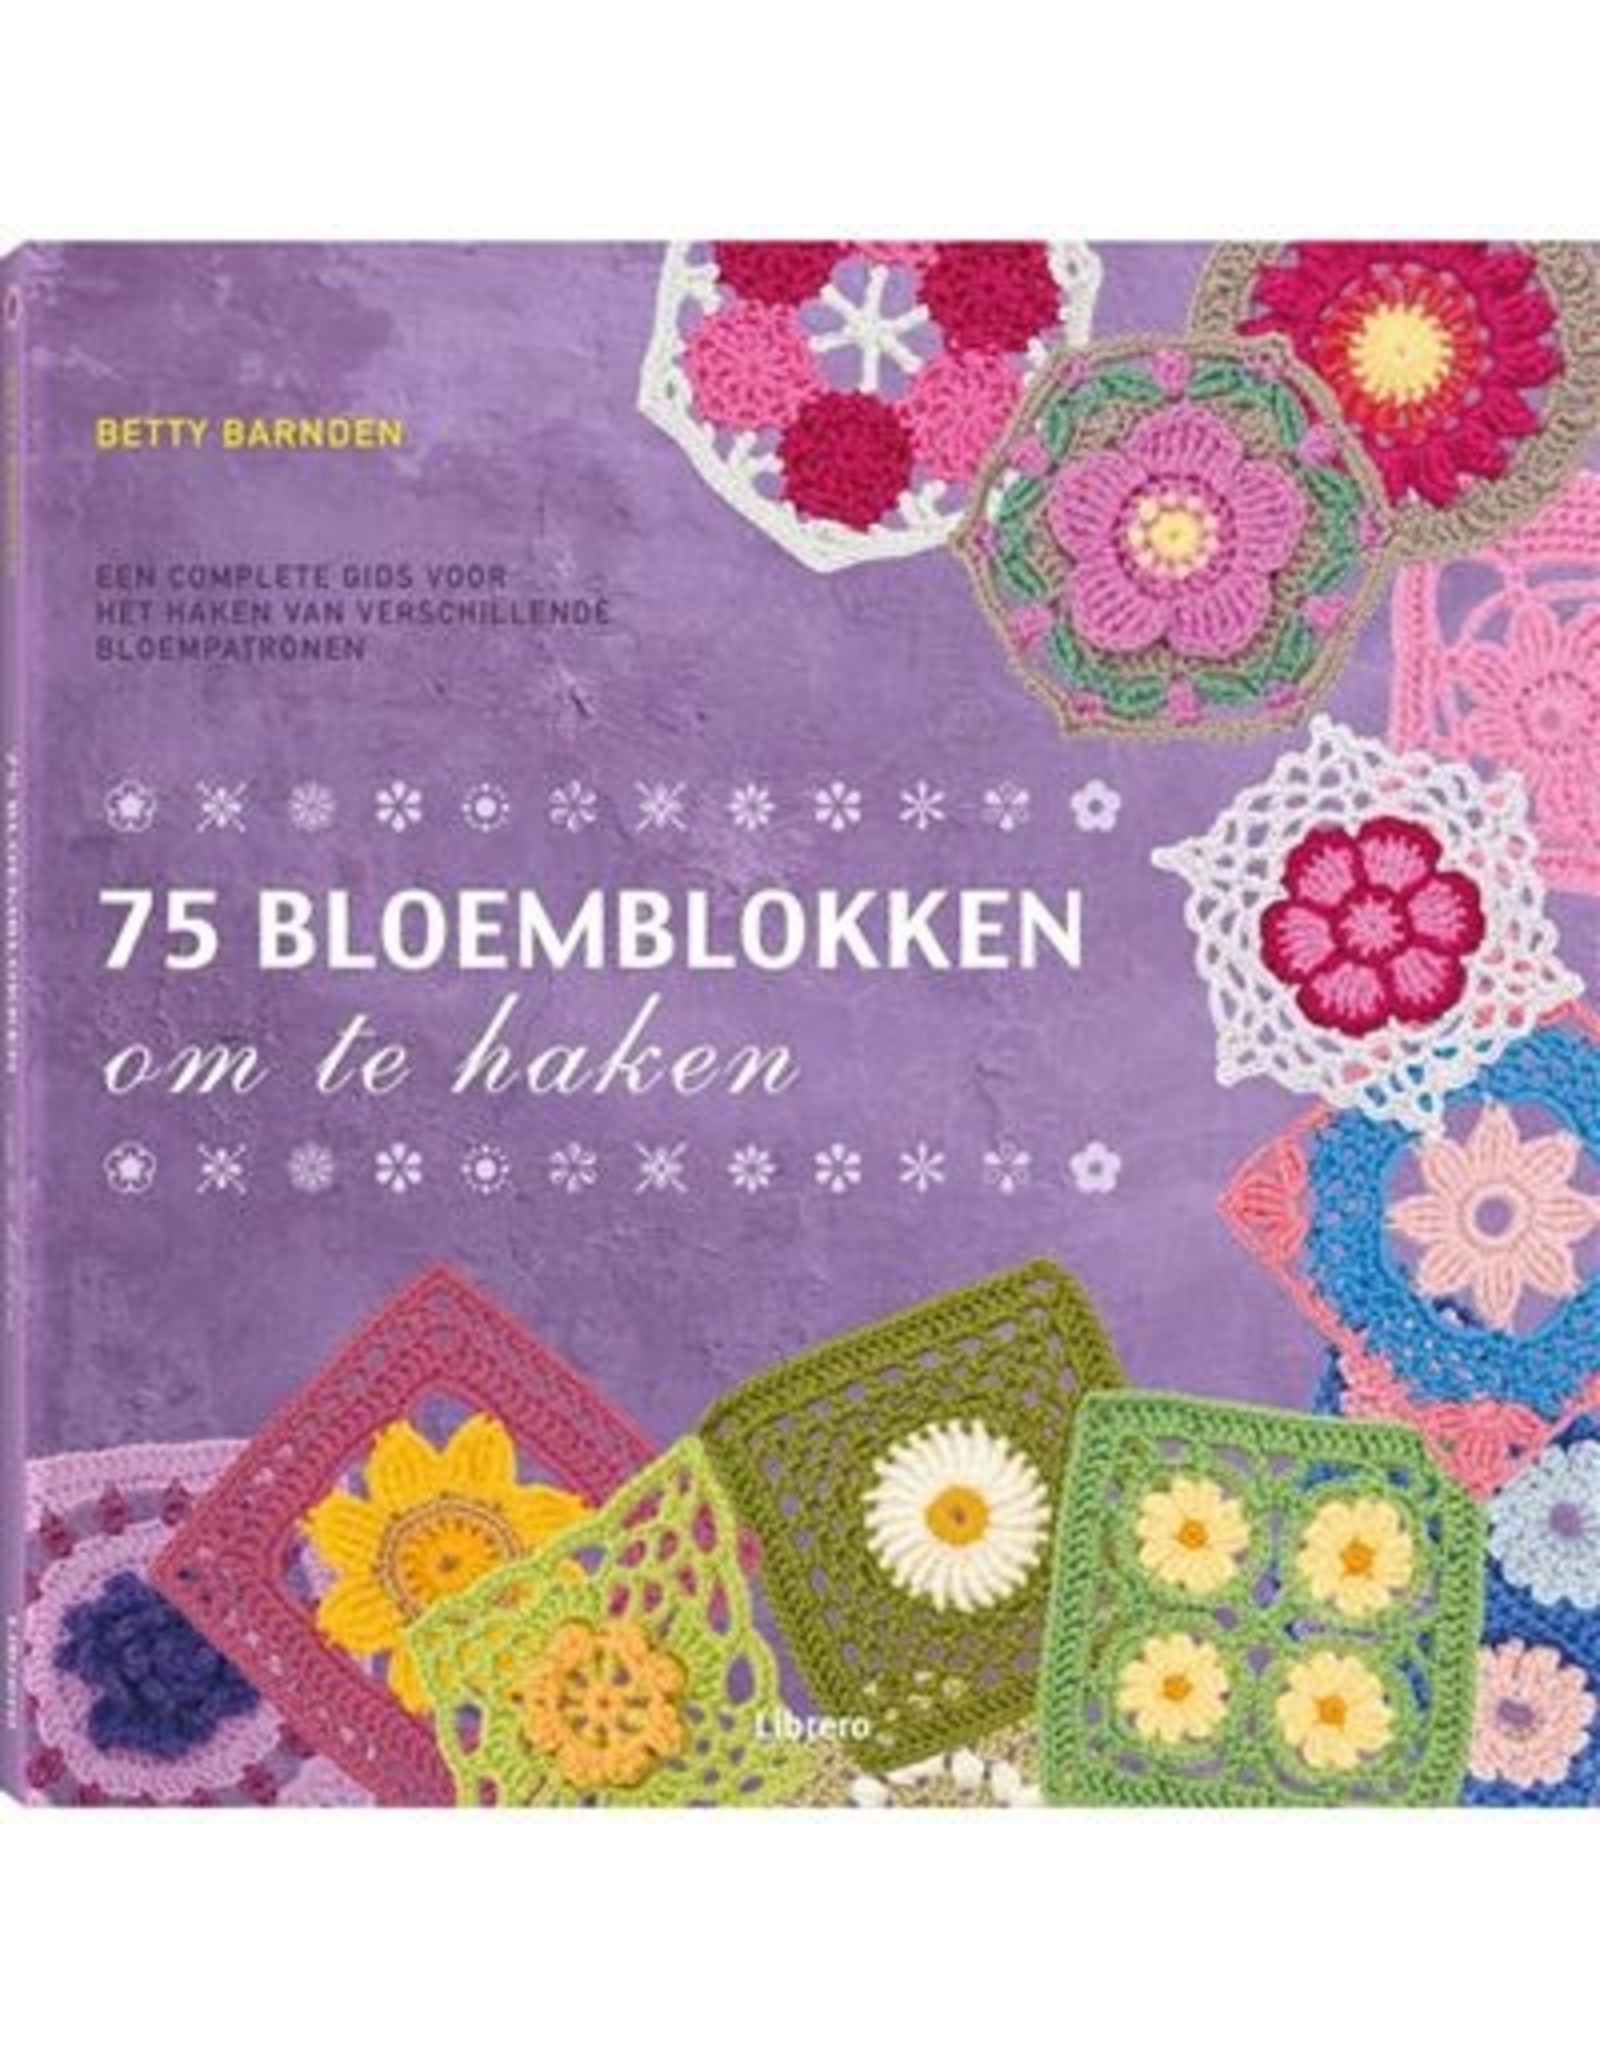 Boek: 75 bloemblokken om te haken